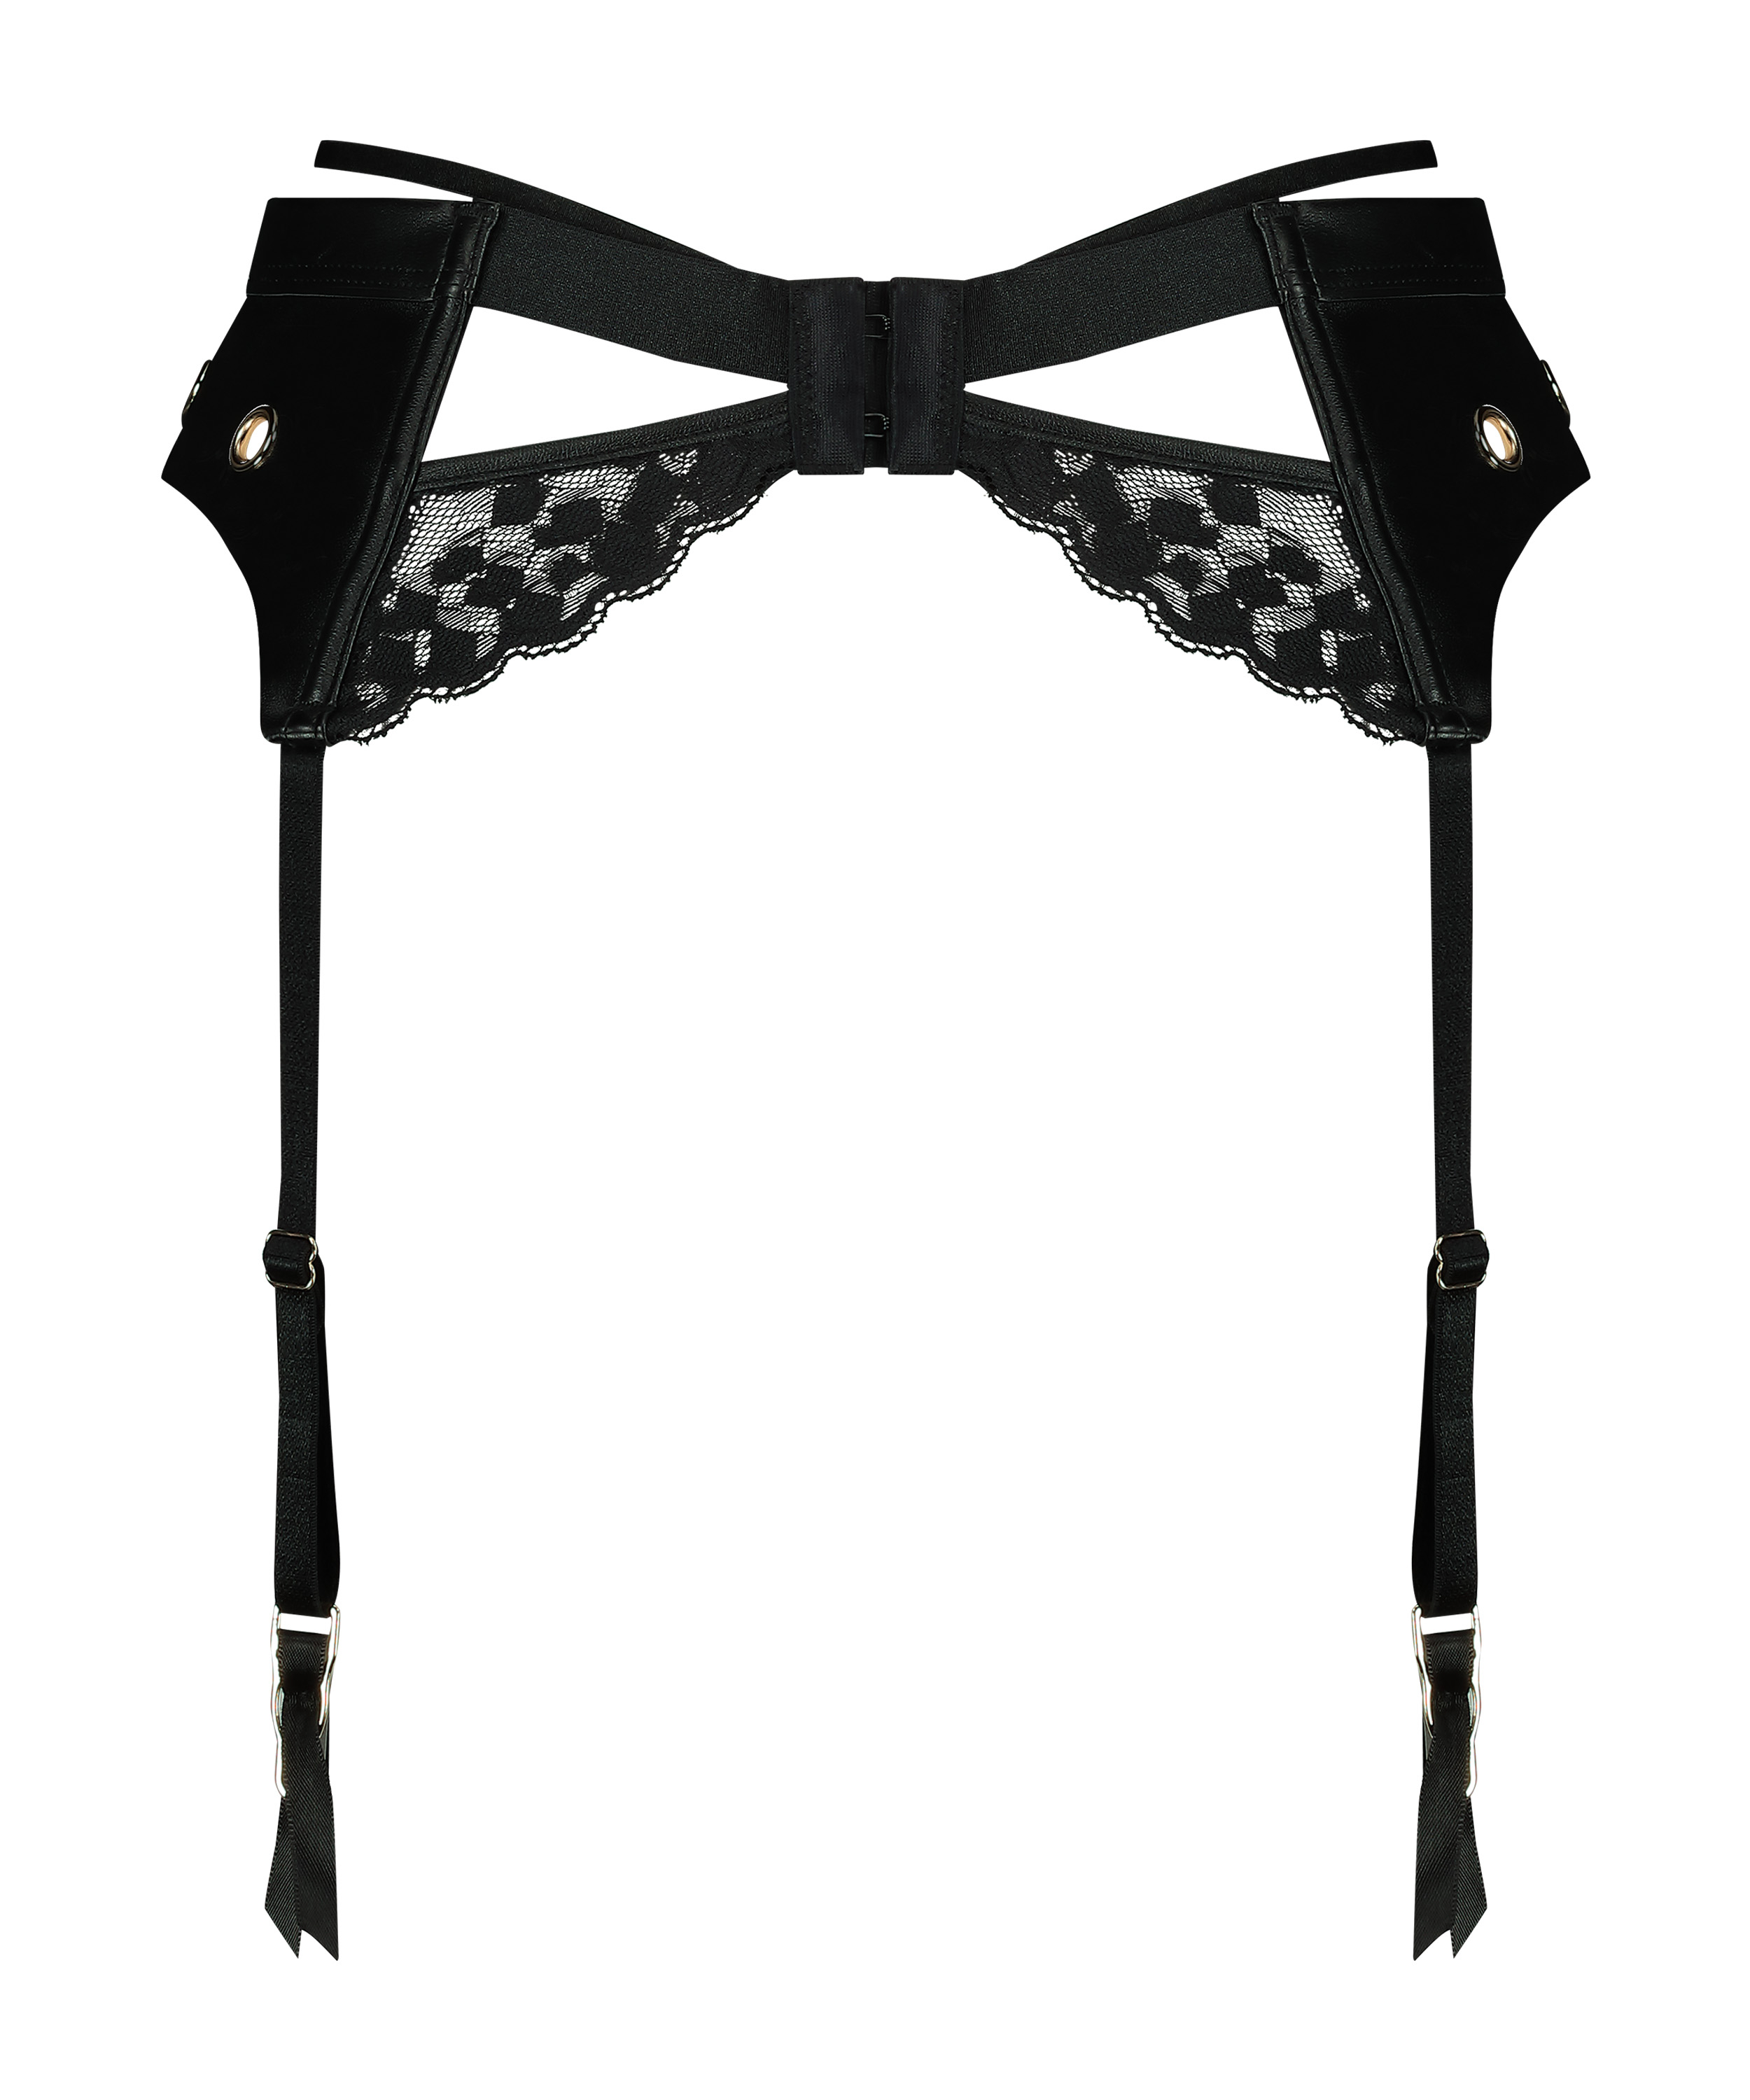 Desire Suspenderbelt, Black, main